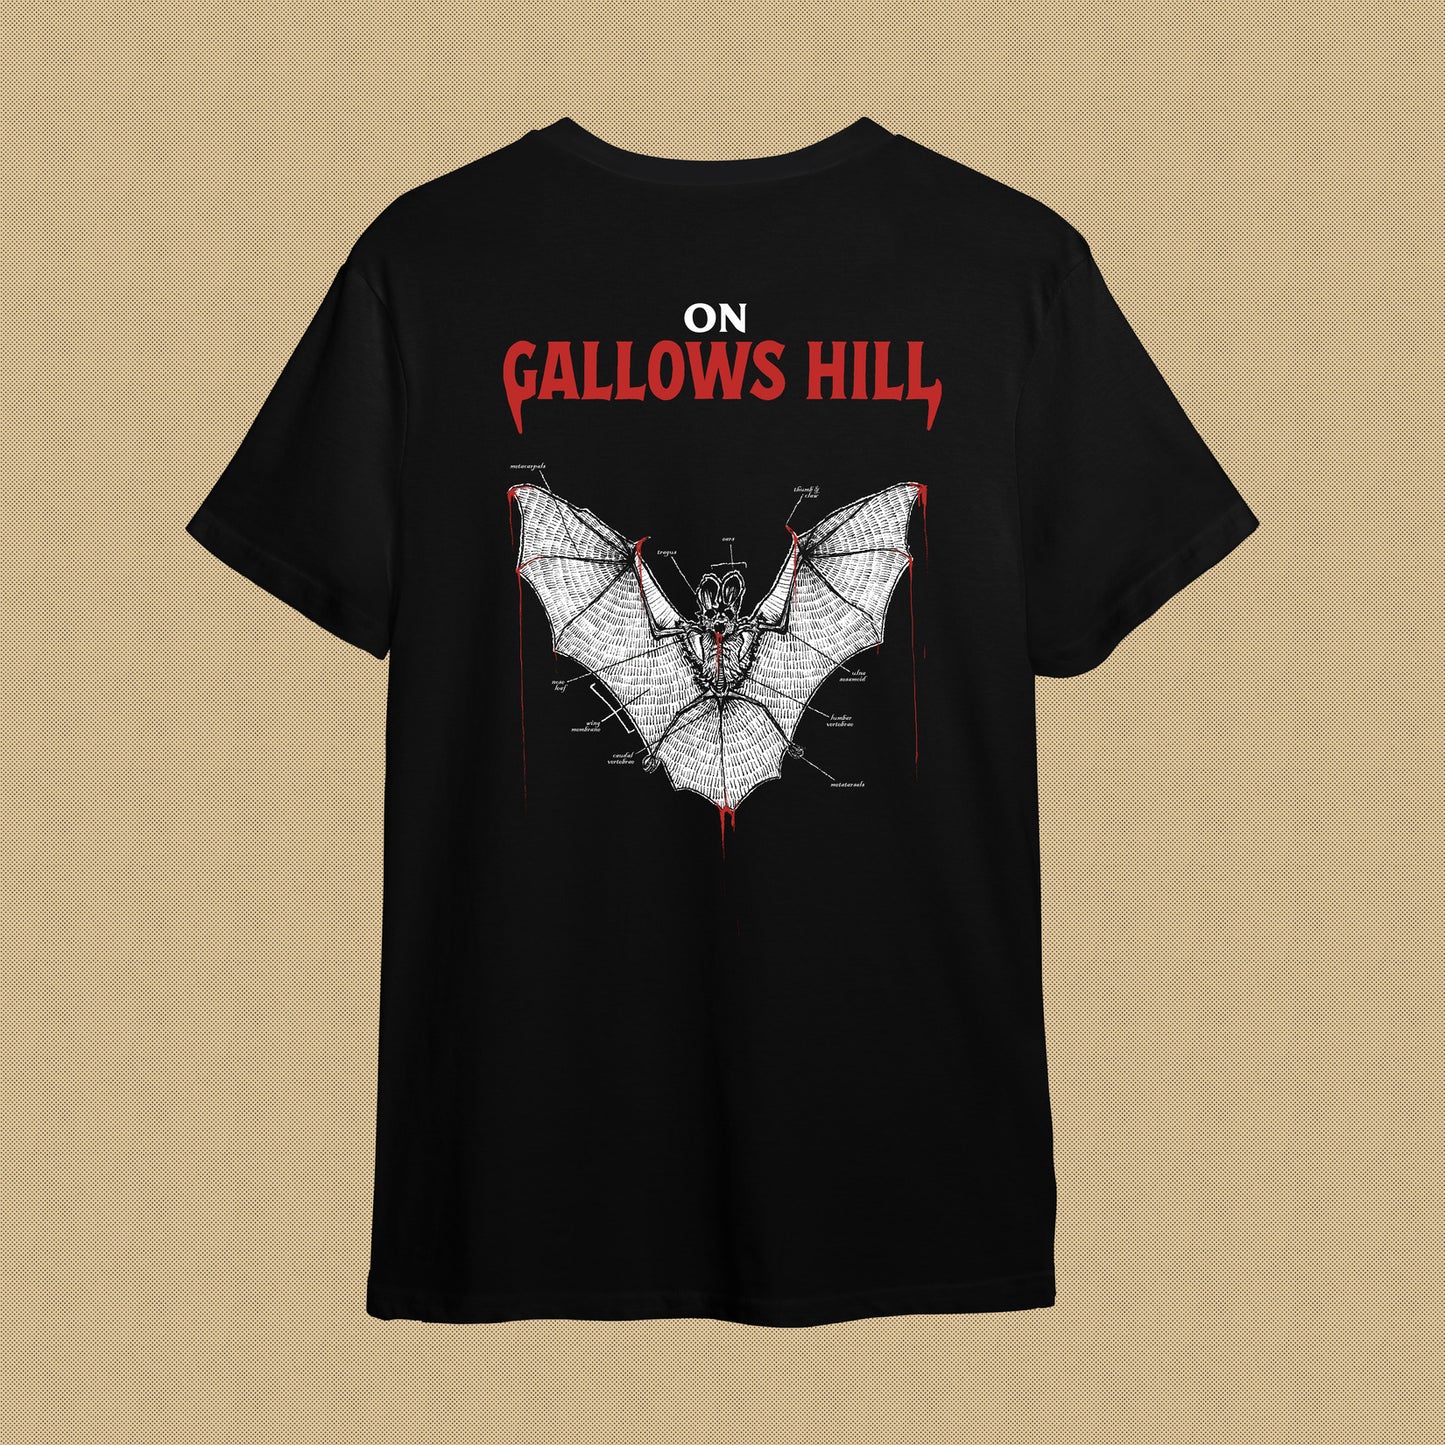 On Gallows Hill T-Shirt "Bat"